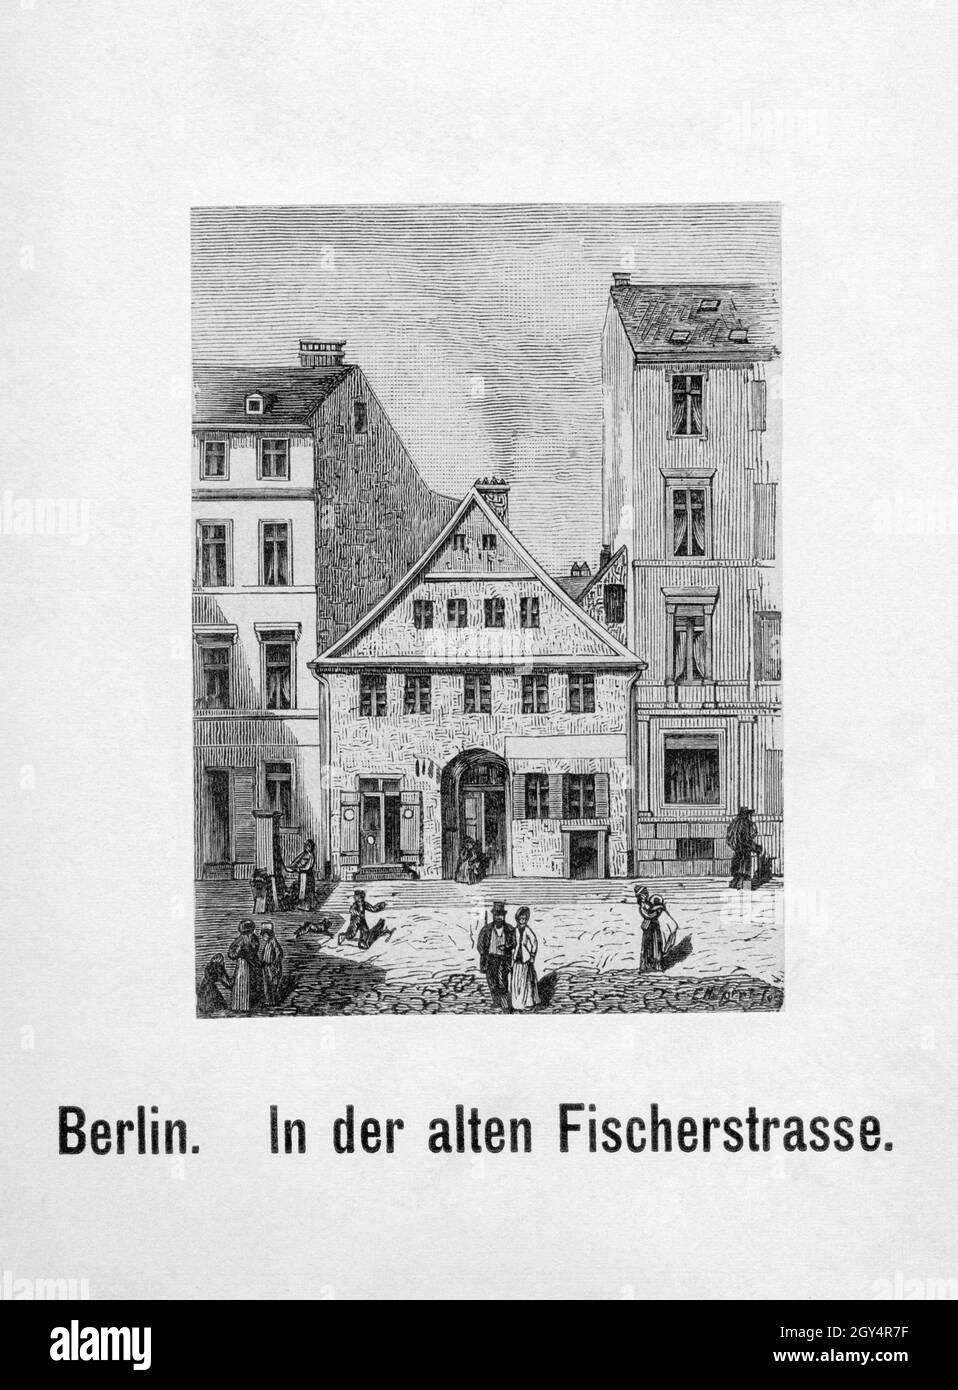 Diese Gravur zeigt Häuser in der Fischerstraße auf der Fischerinsel in  Berlin-Mitte (Straße existiert nicht mehr). Undatiert, wahrscheinlich um  1840 hergestellt. [Automatisierte Übersetzung] Stockfotografie - Alamy